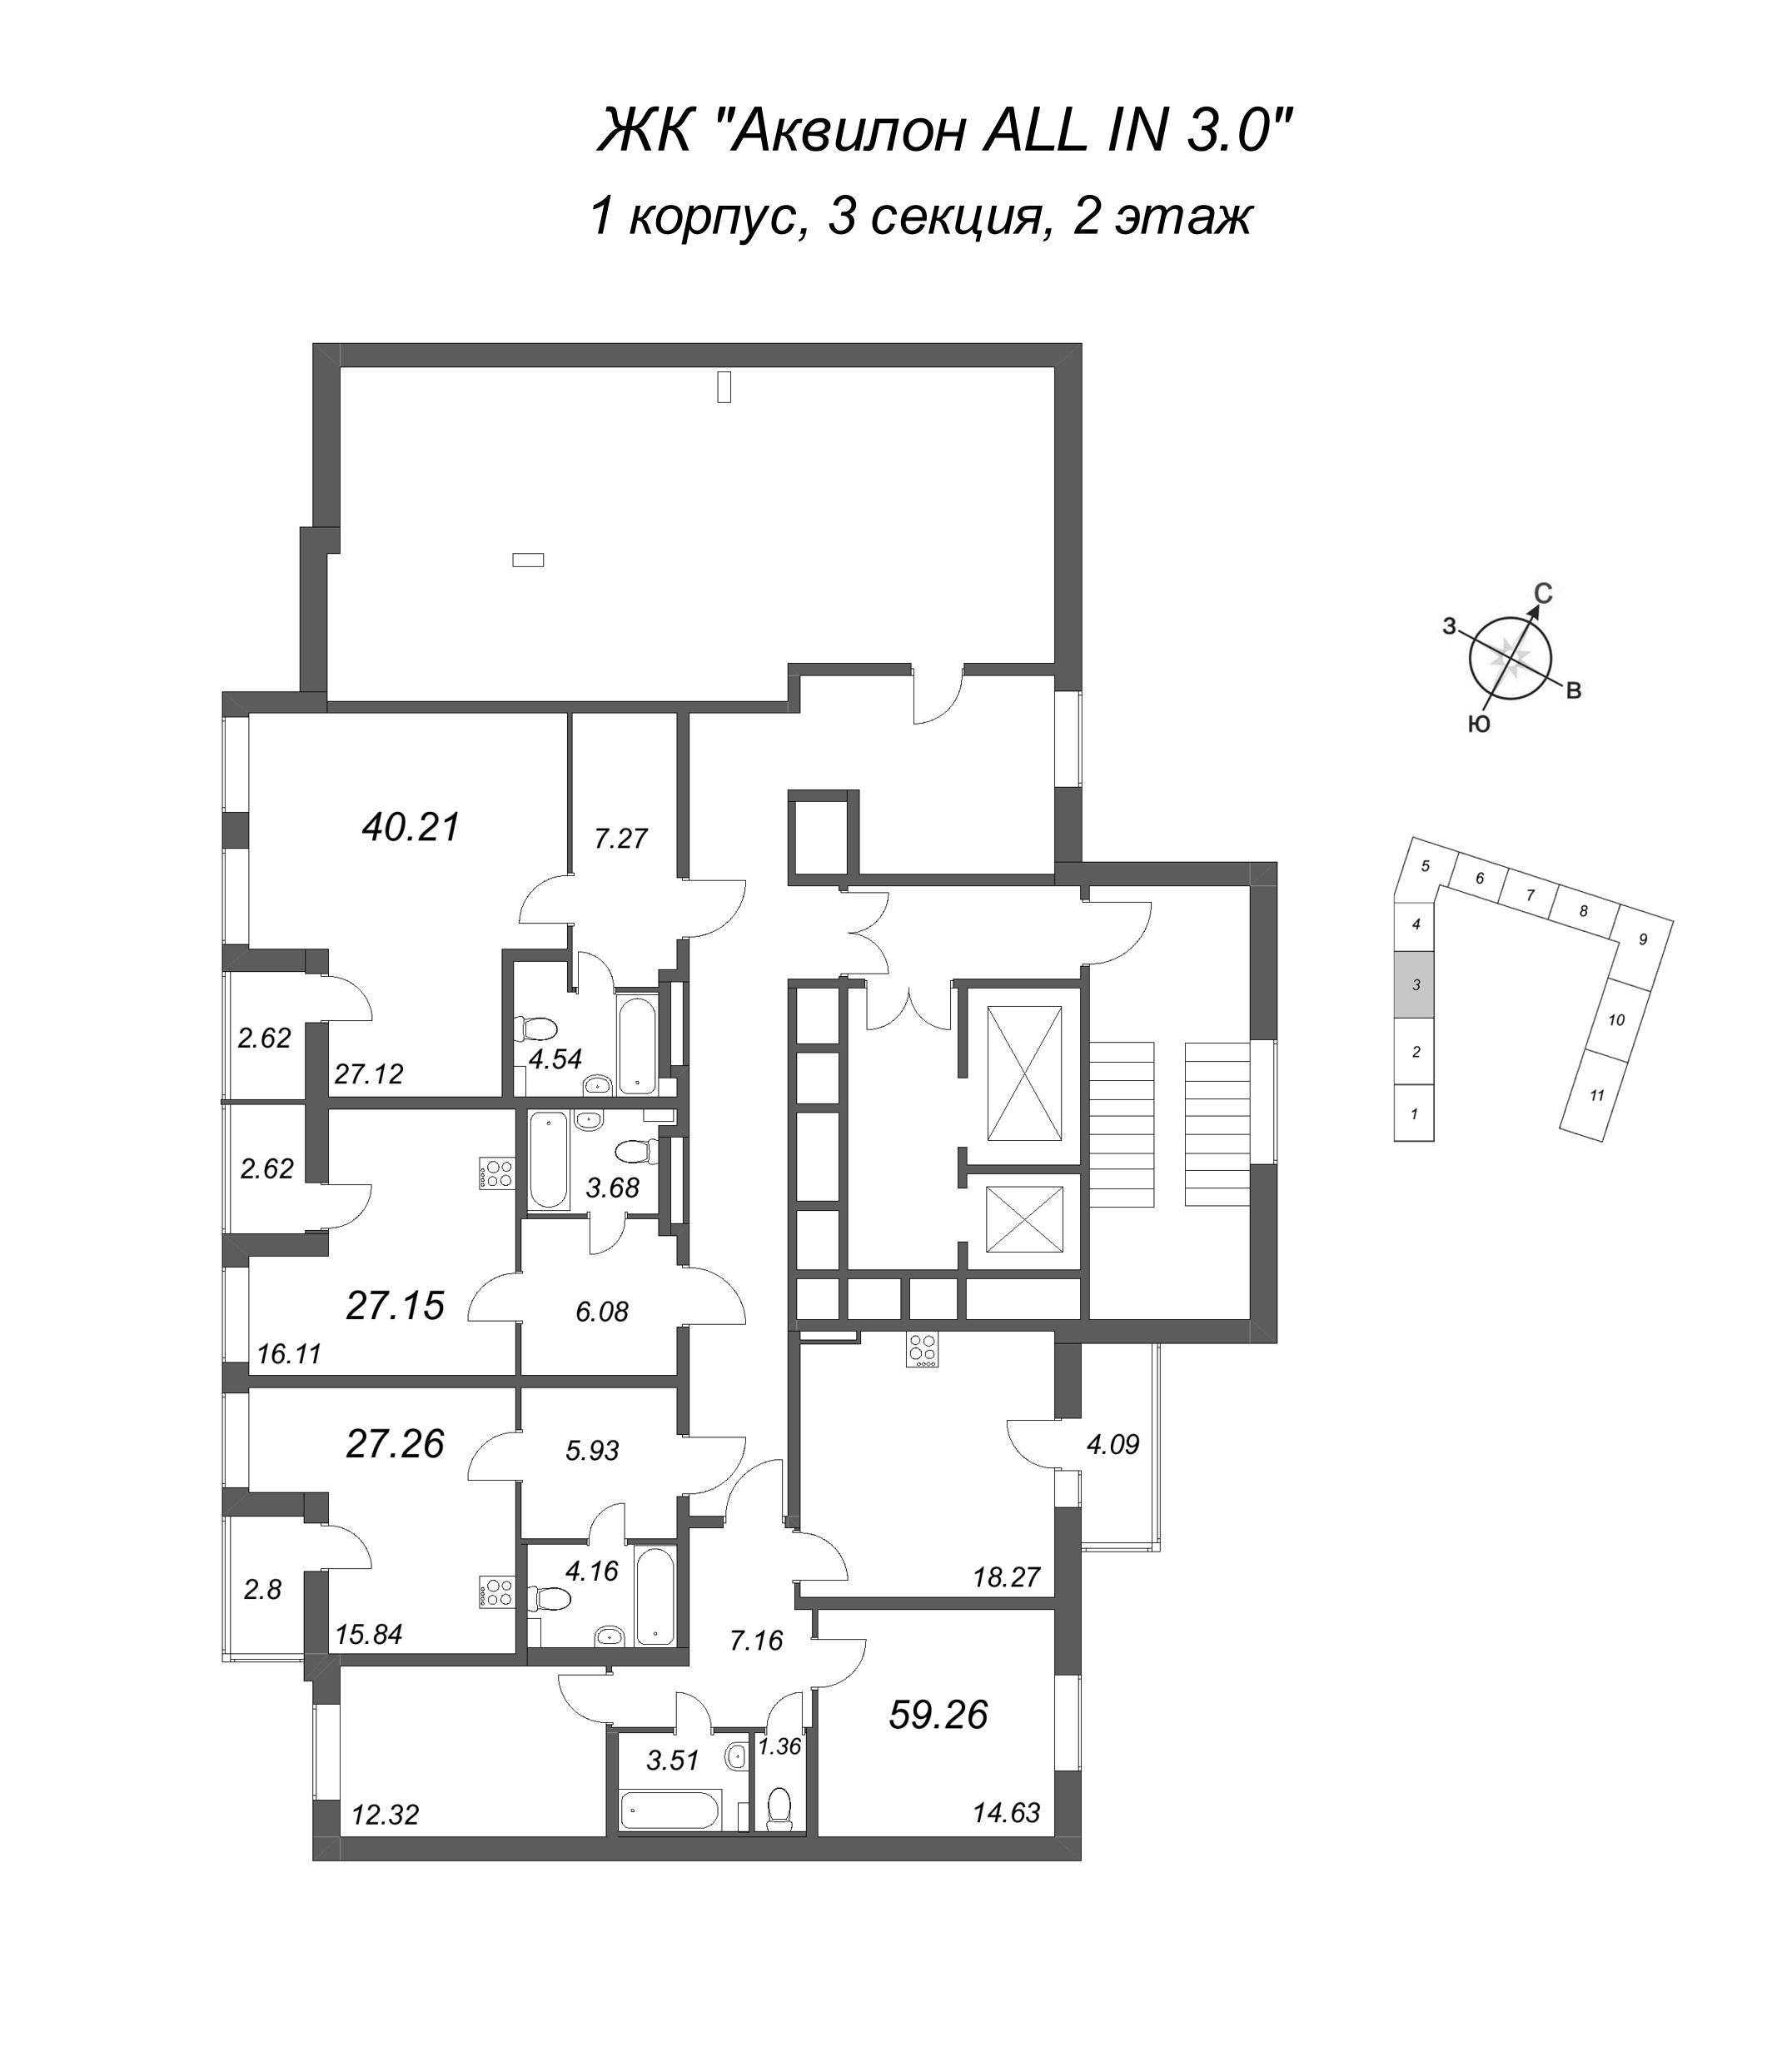 3-комнатная (Евро) квартира, 59.26 м² в ЖК "Аквилон All in 3.0" - планировка этажа